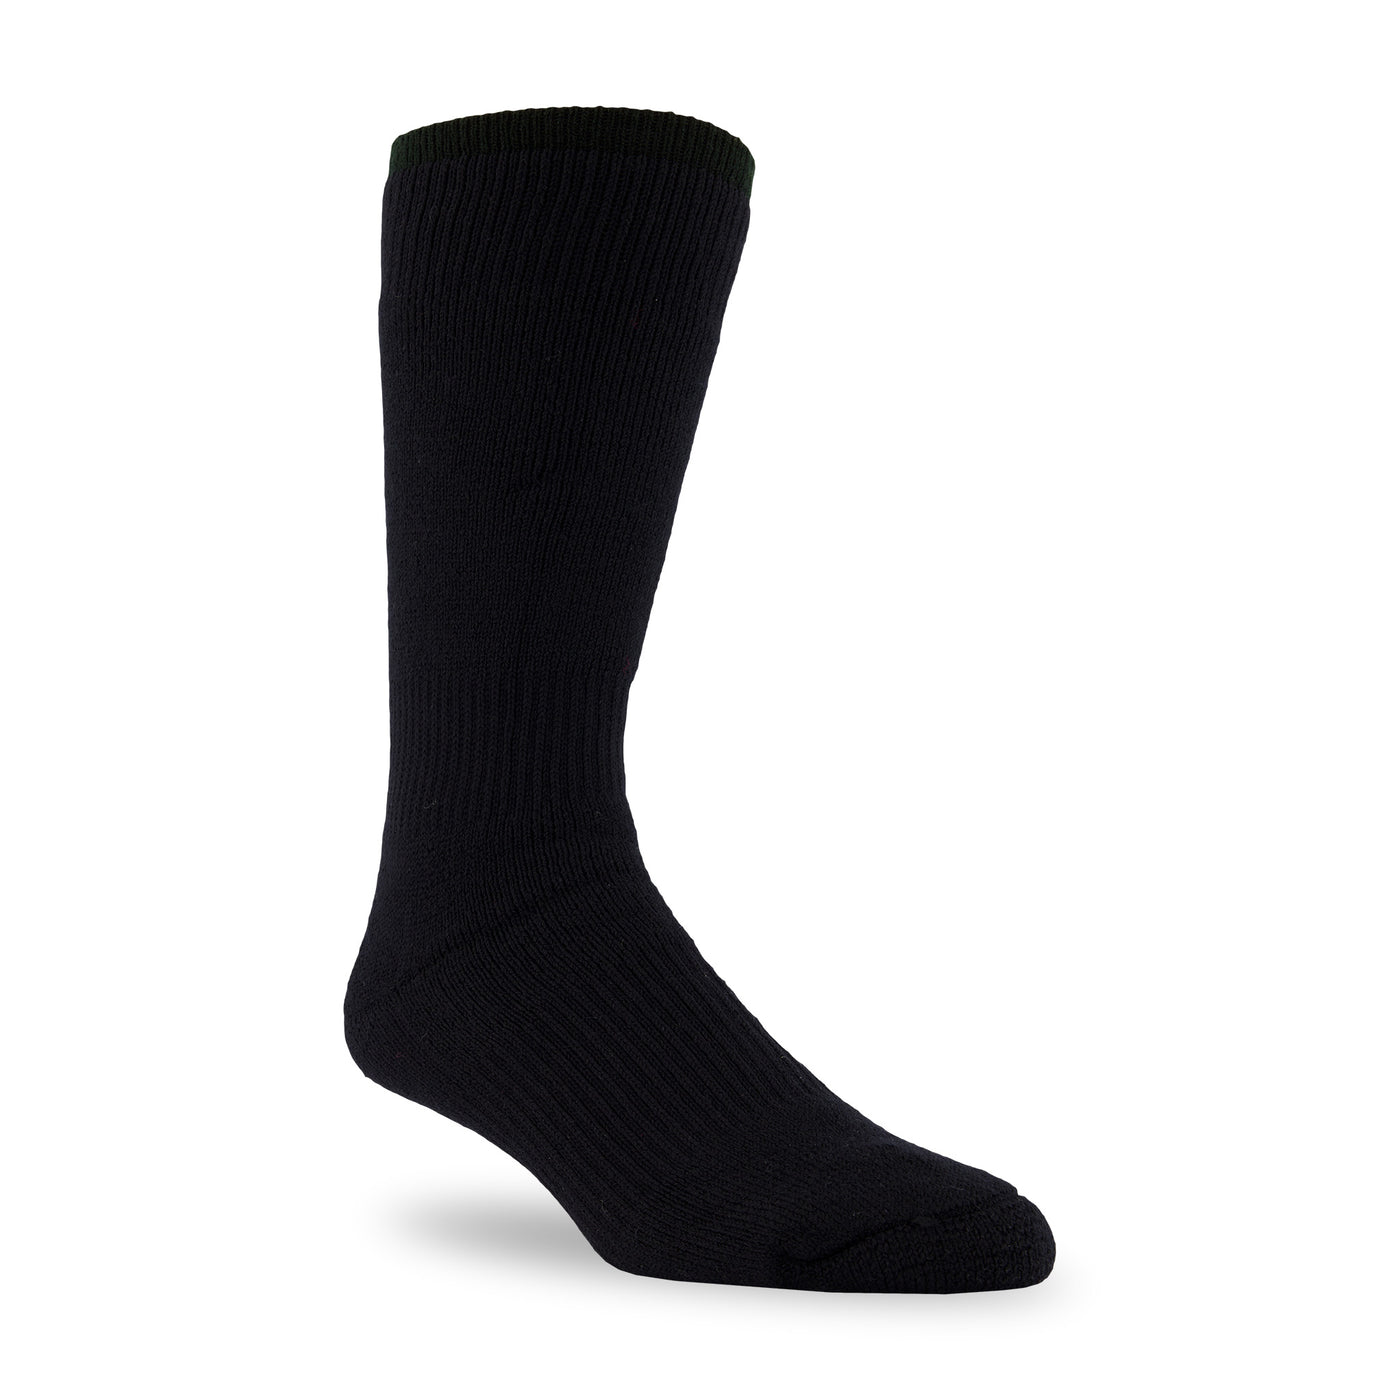 Black Merino Wool Thermal Socks